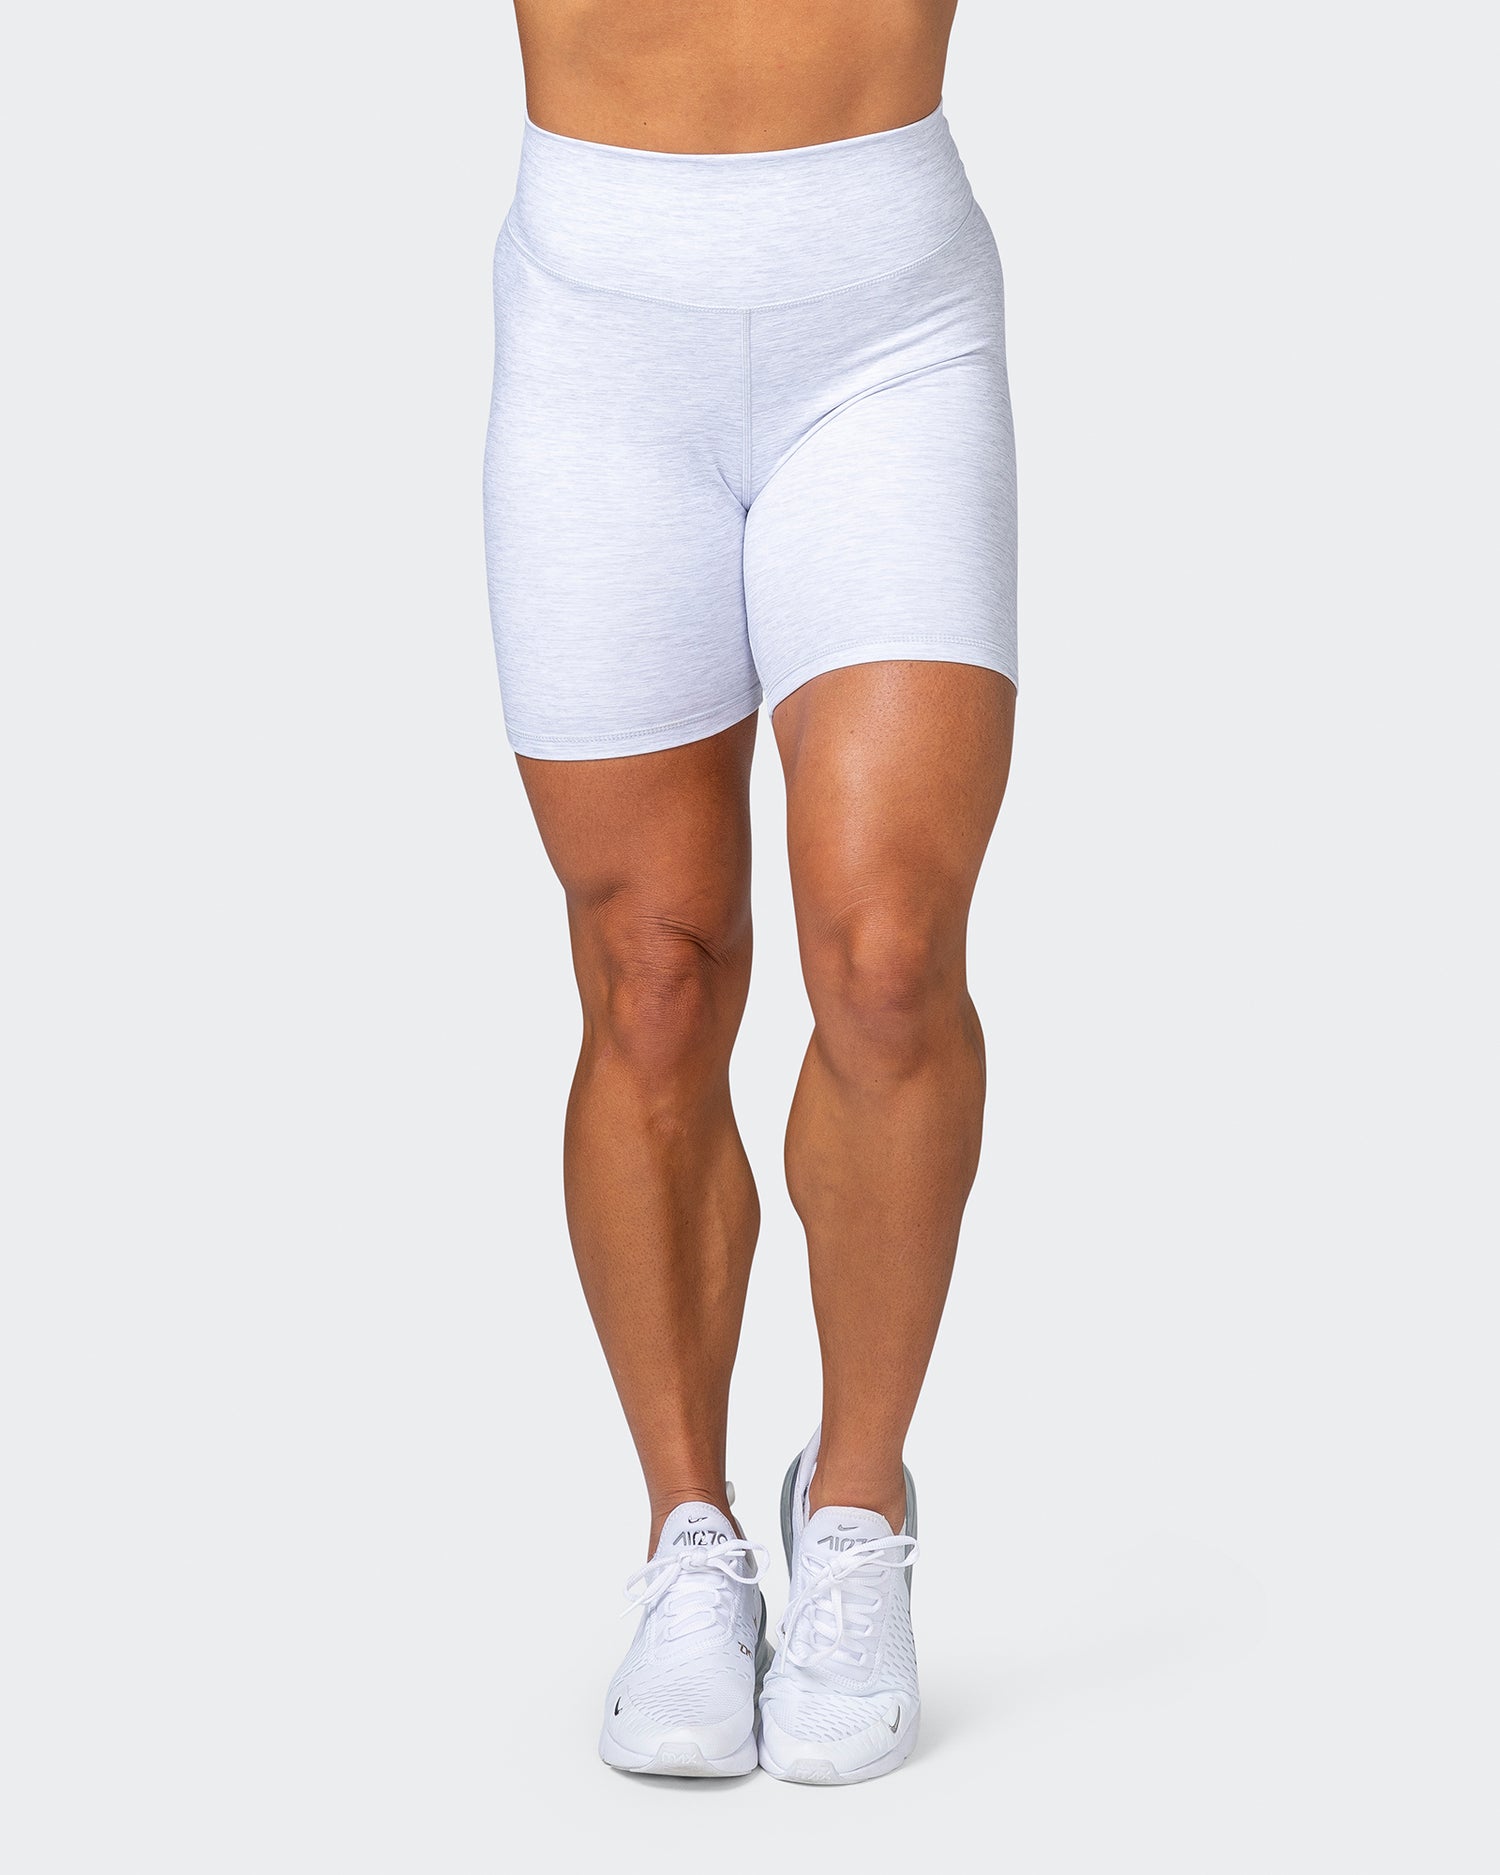 HBxMN Everyday Haven Bike Shorts - White Grey Marl